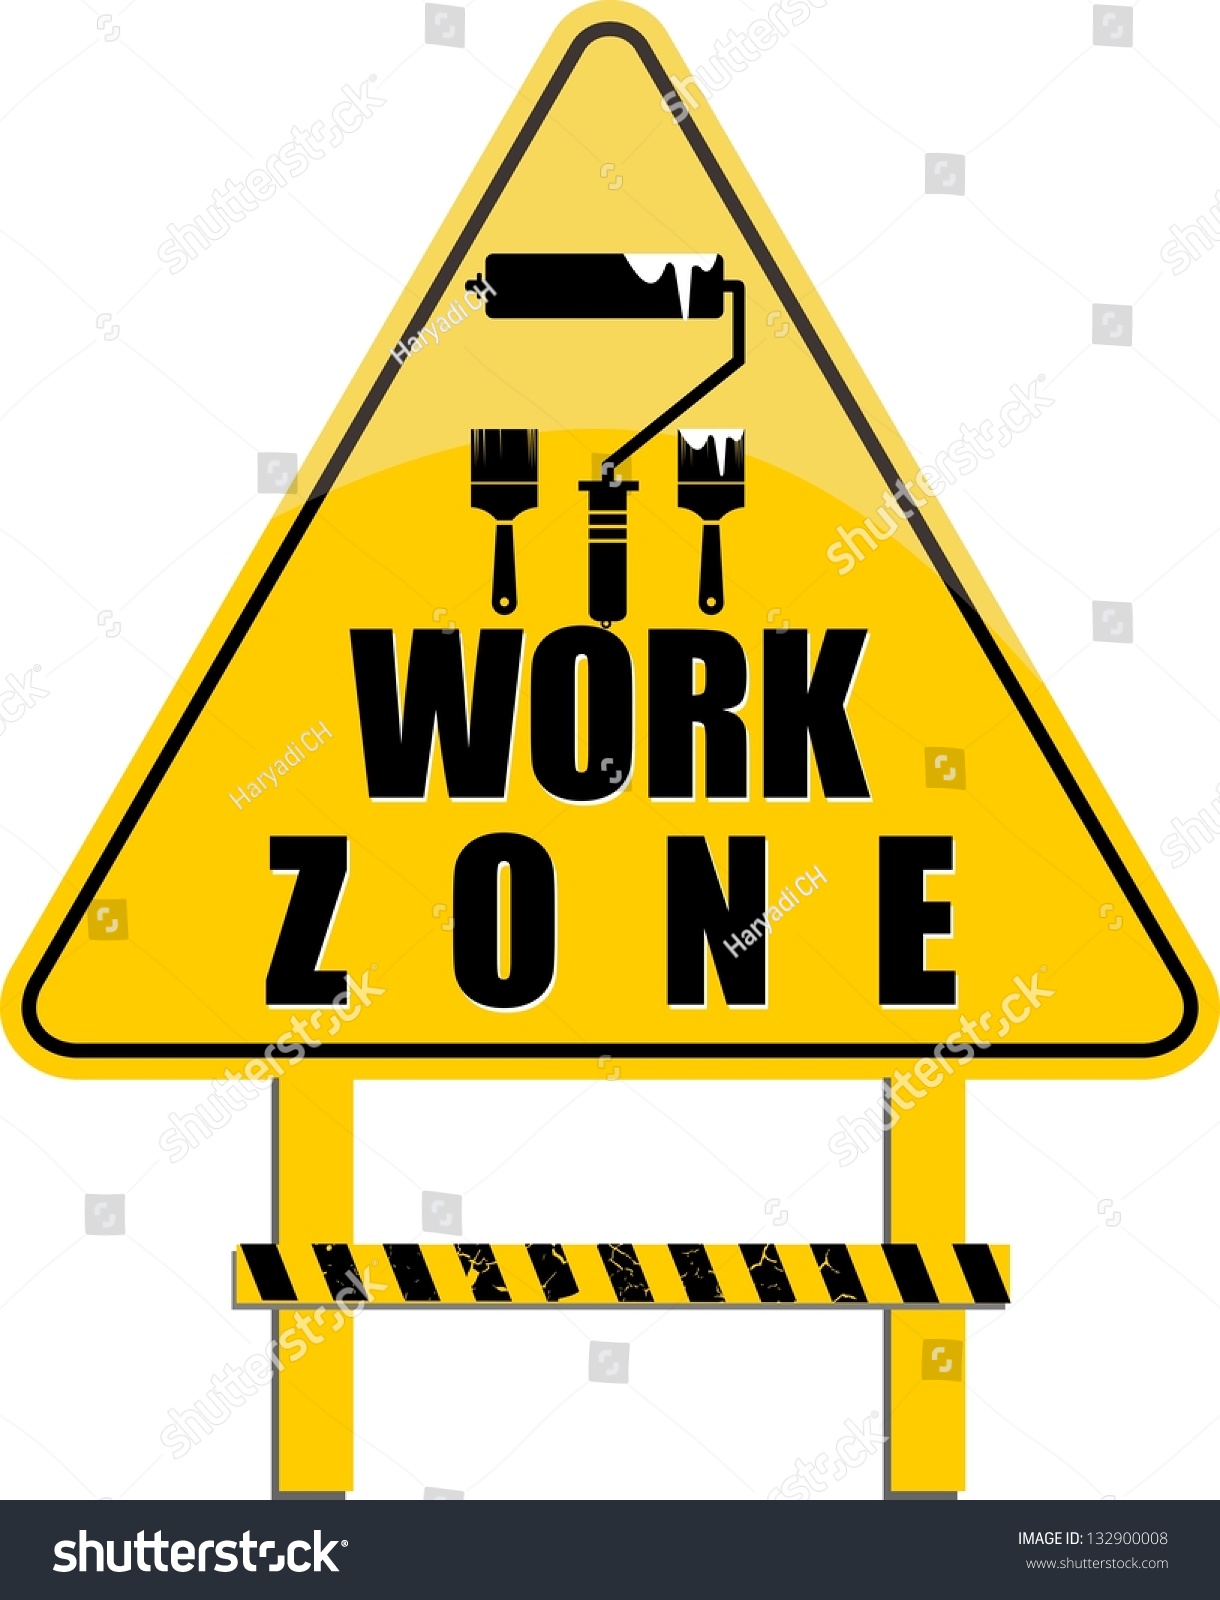 Work Zone Vector - 132900008 : Shutterstock